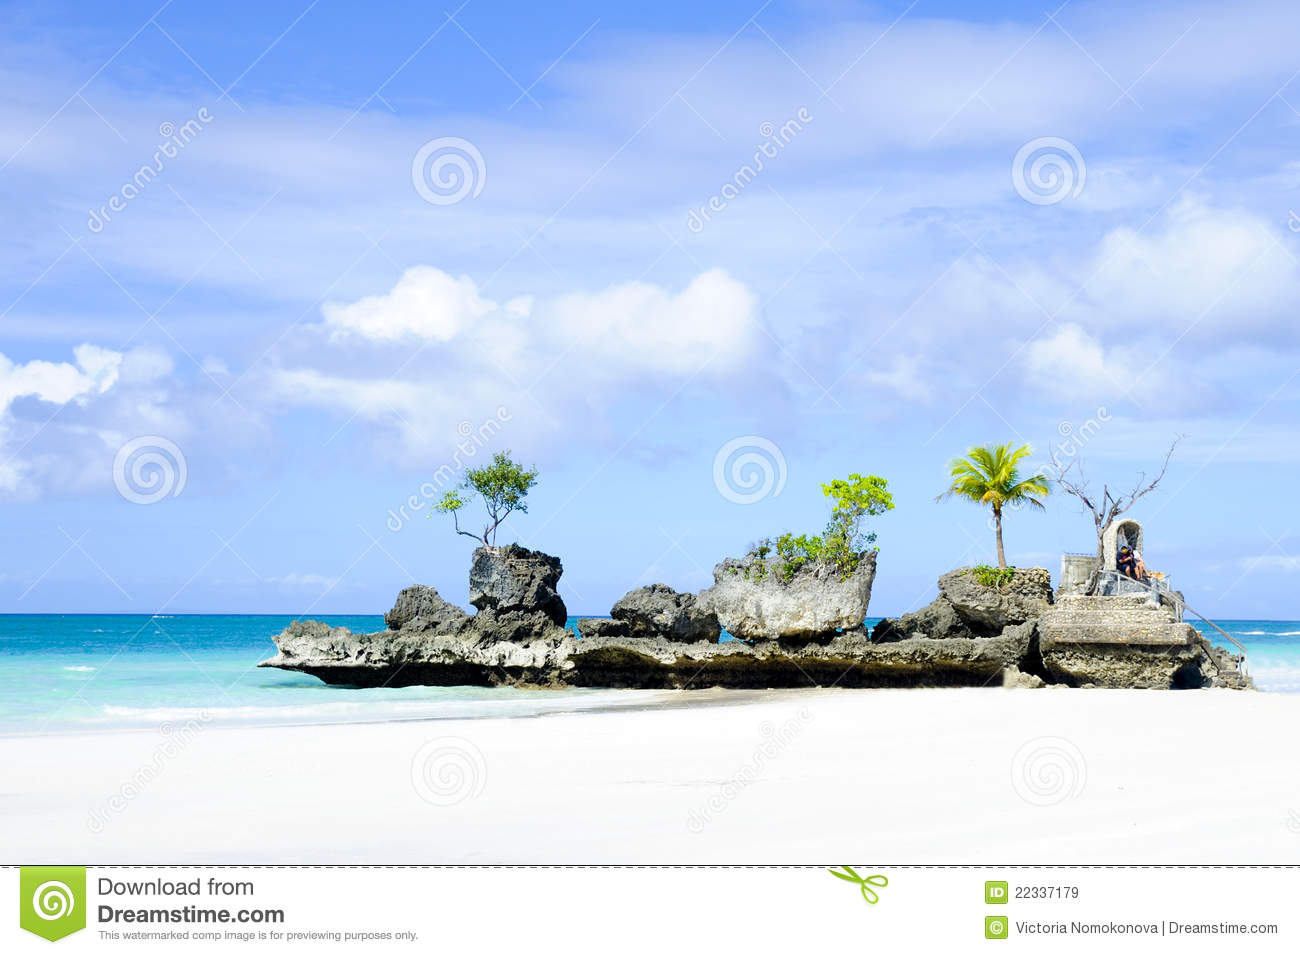 Boracay Island Royalty Free Stock Images   Image  22337179